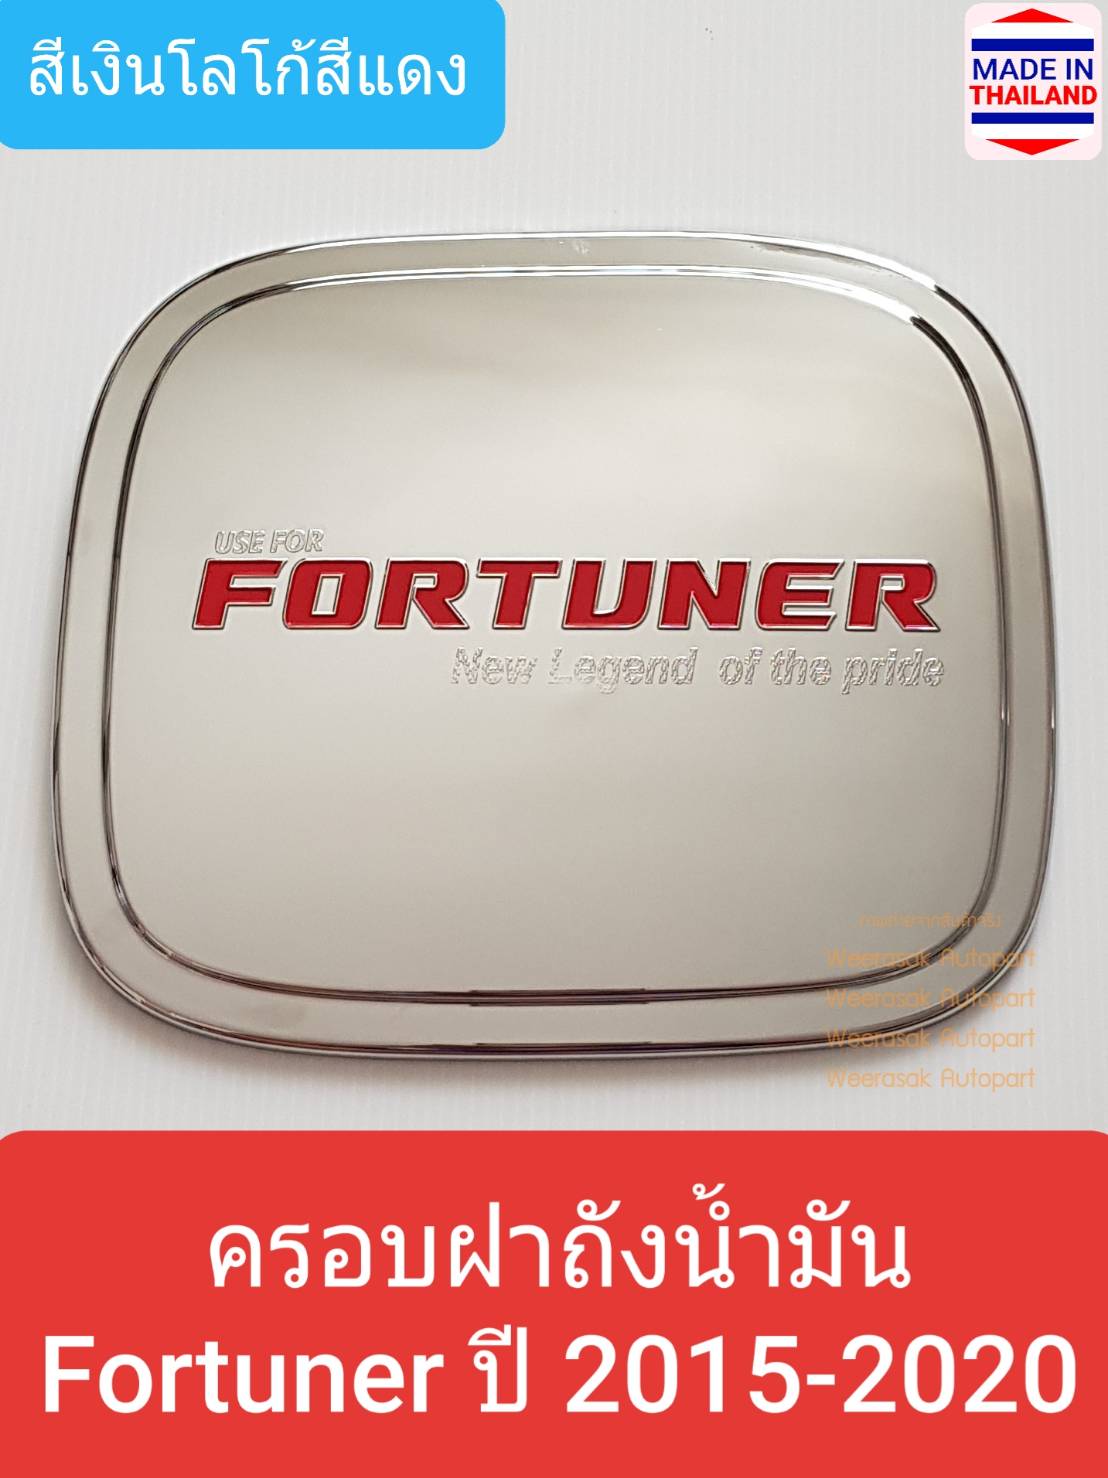 ครอบฝาถังน้ำมัน Toyota Fortuner โตโยต้า ฟอร์จูนเนอร์ ปี 2015-ปัจจุบัน (สีเงินโลโก้สีแดง) (ใช้เทปกาว 3M)